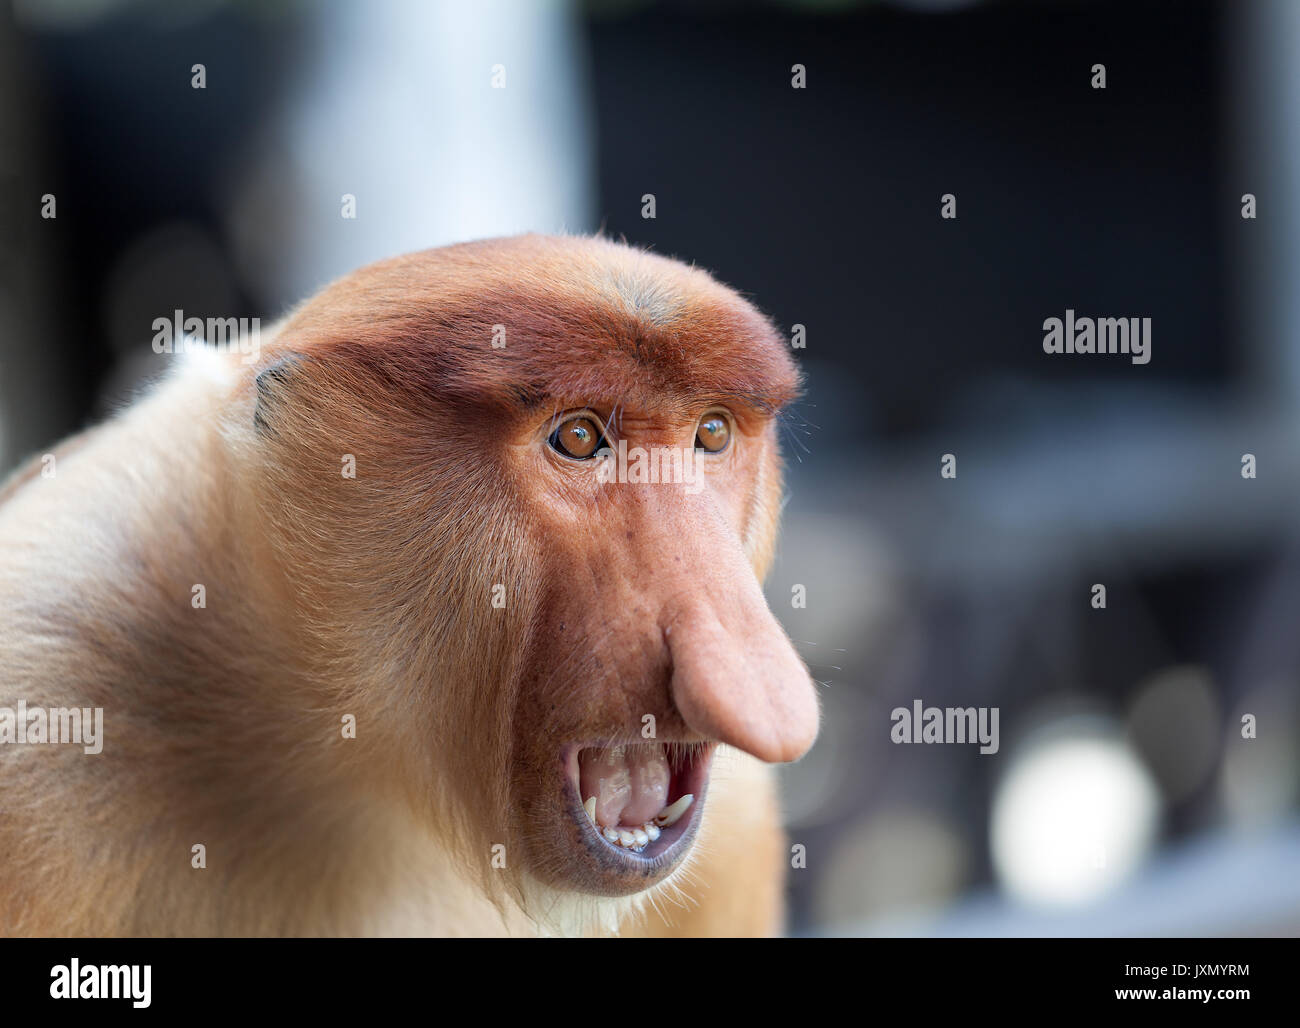 Endangered Proboscis monkey portrait, Borneo Stock Photo